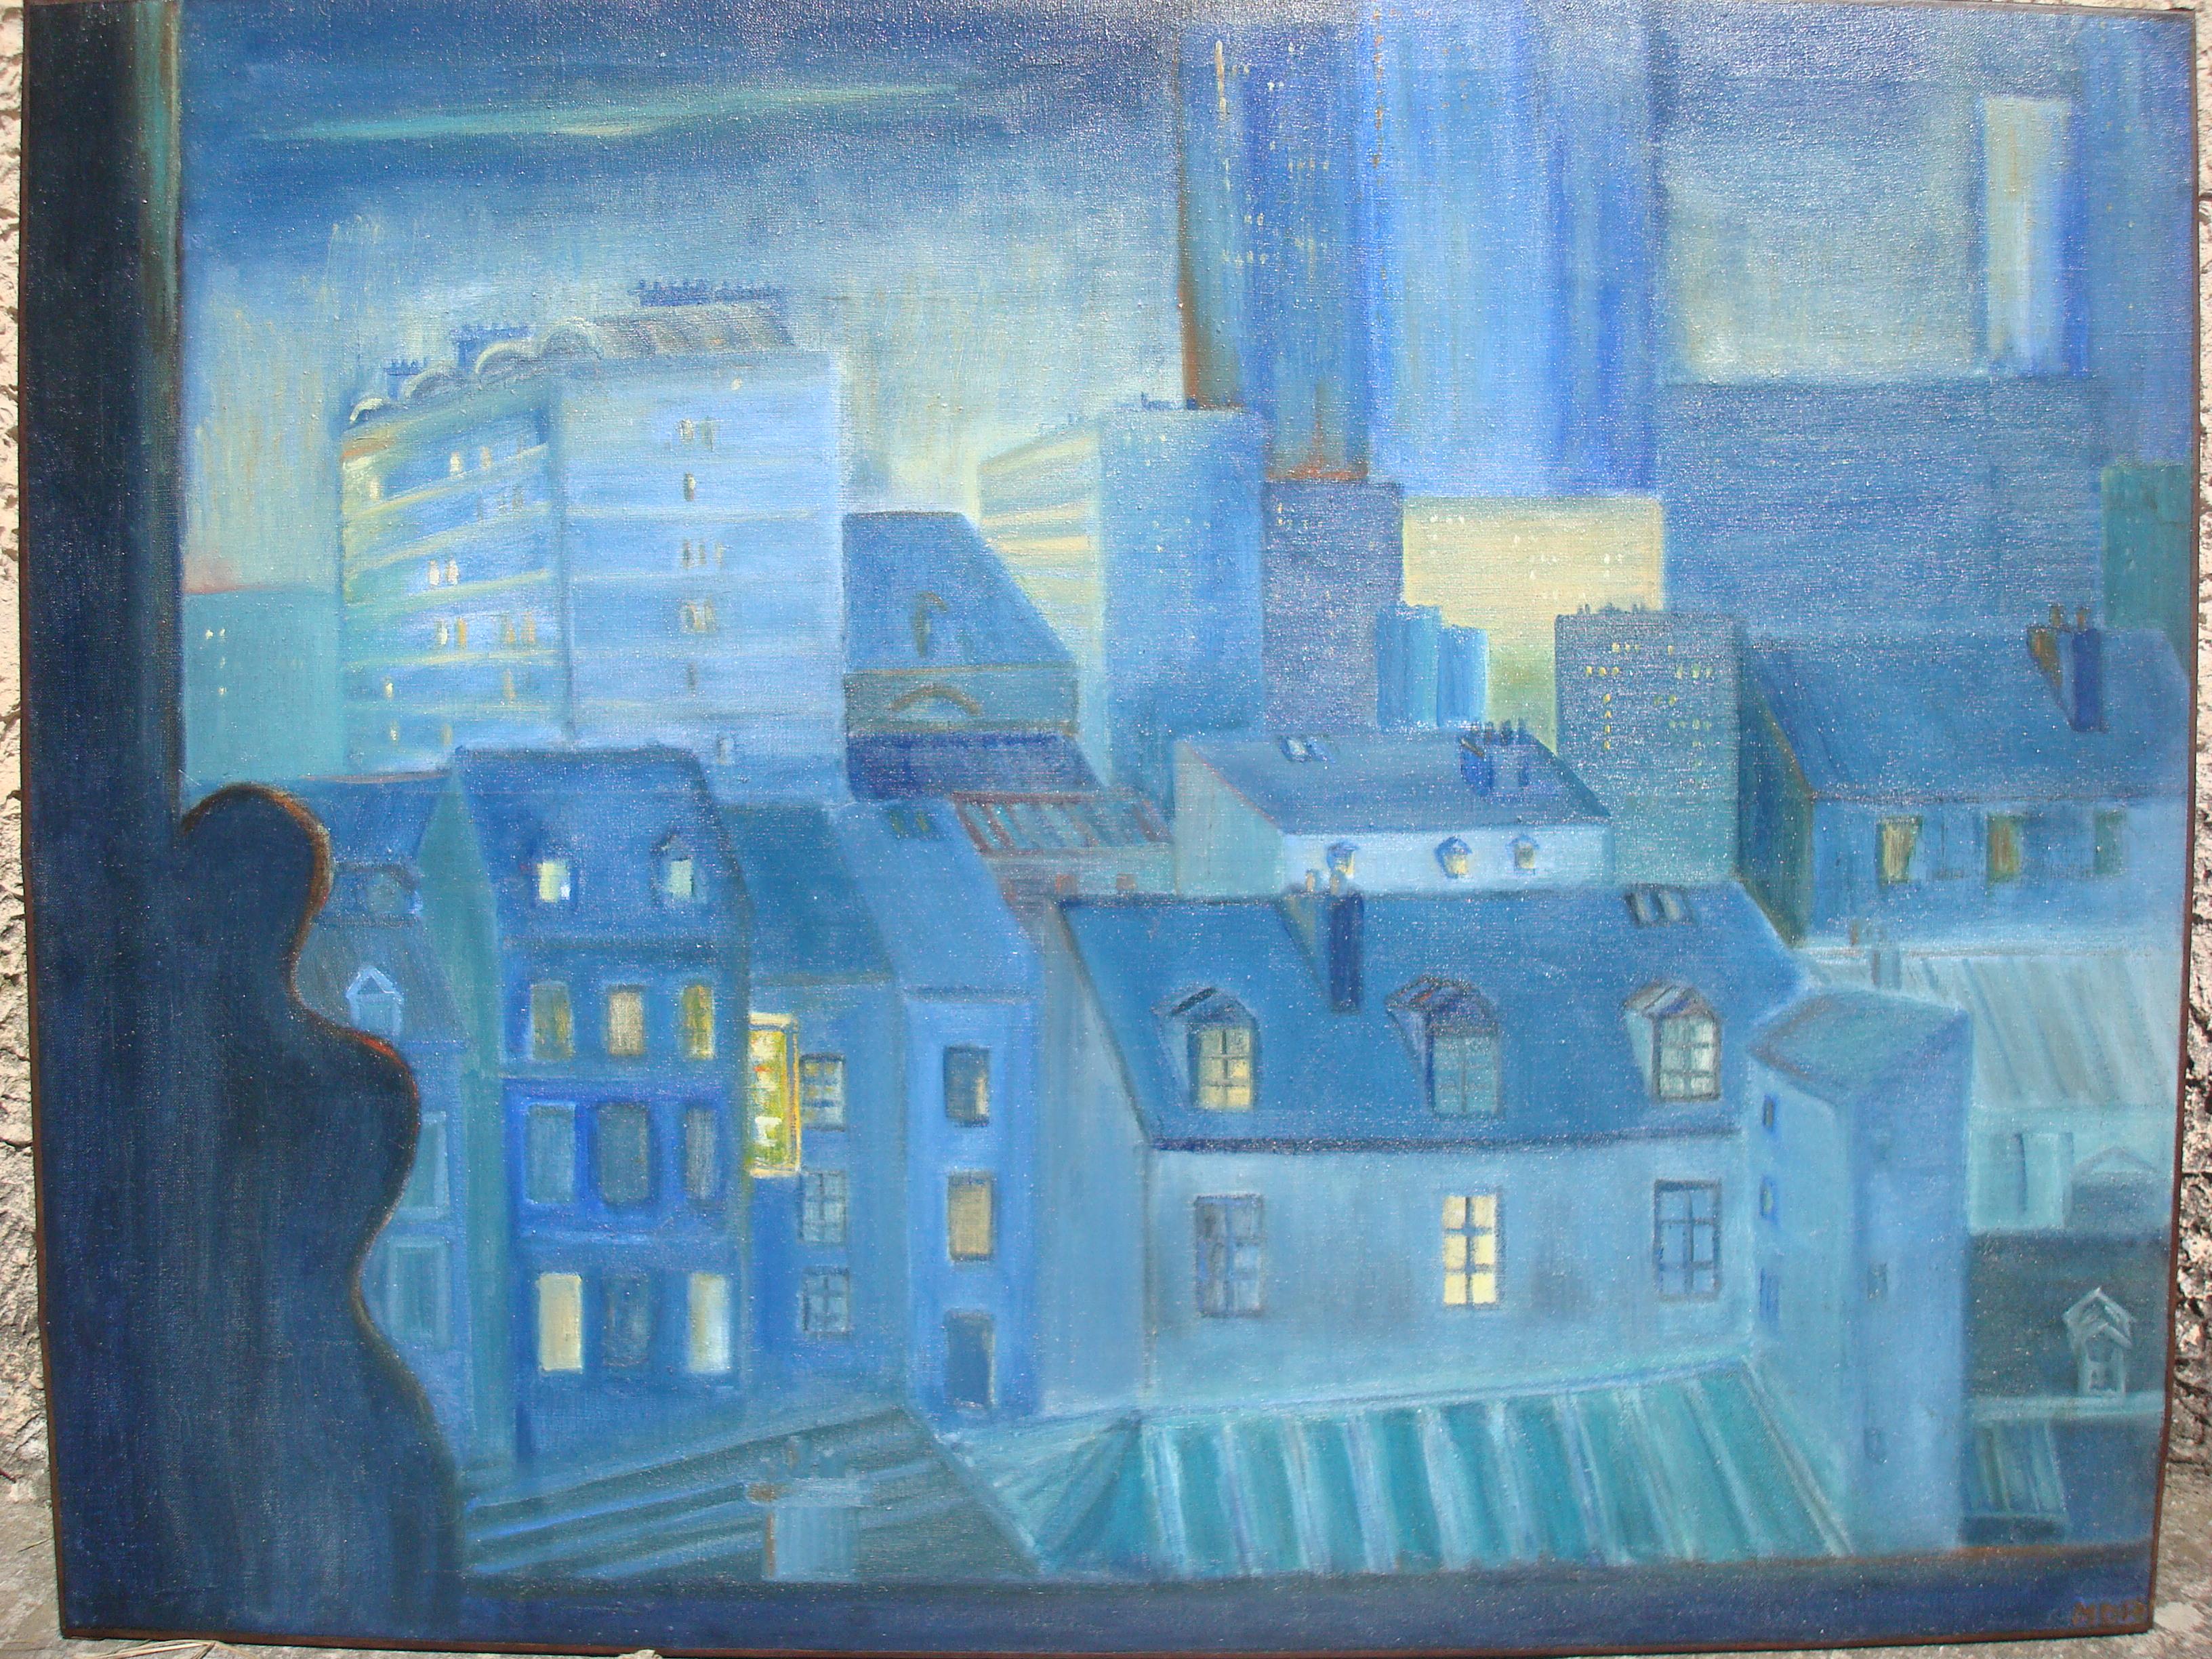 Originalgemälde in Öl auf Leinwand von den Dächern von Paris, Frankreich, sicherlich ein Zimmer mit einer herrlichen Aussicht. 
Atemberaubende zeitgenössische blaue Farben. 
Rechts unten handschriftlich signiert, nicht identifizierter